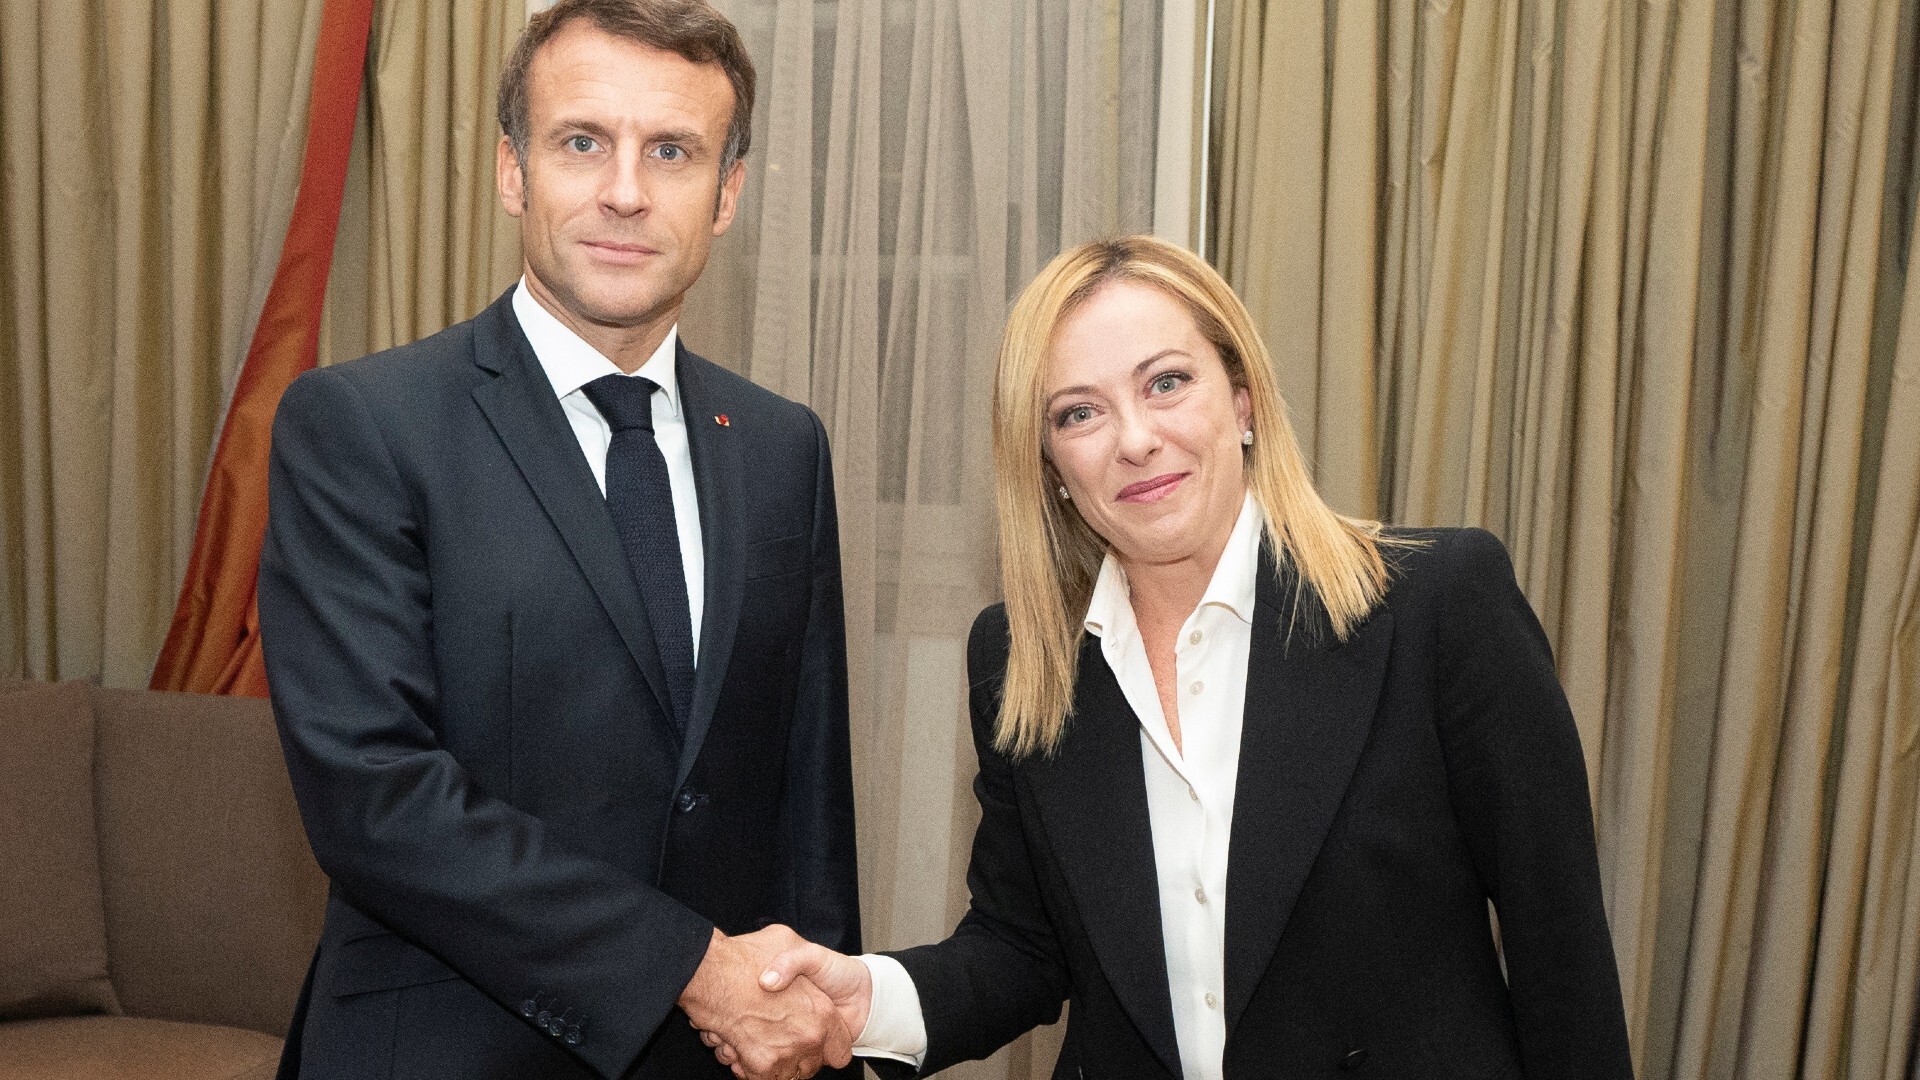 Meloni et Macron plaident pour une coopération face aux « grands défis »